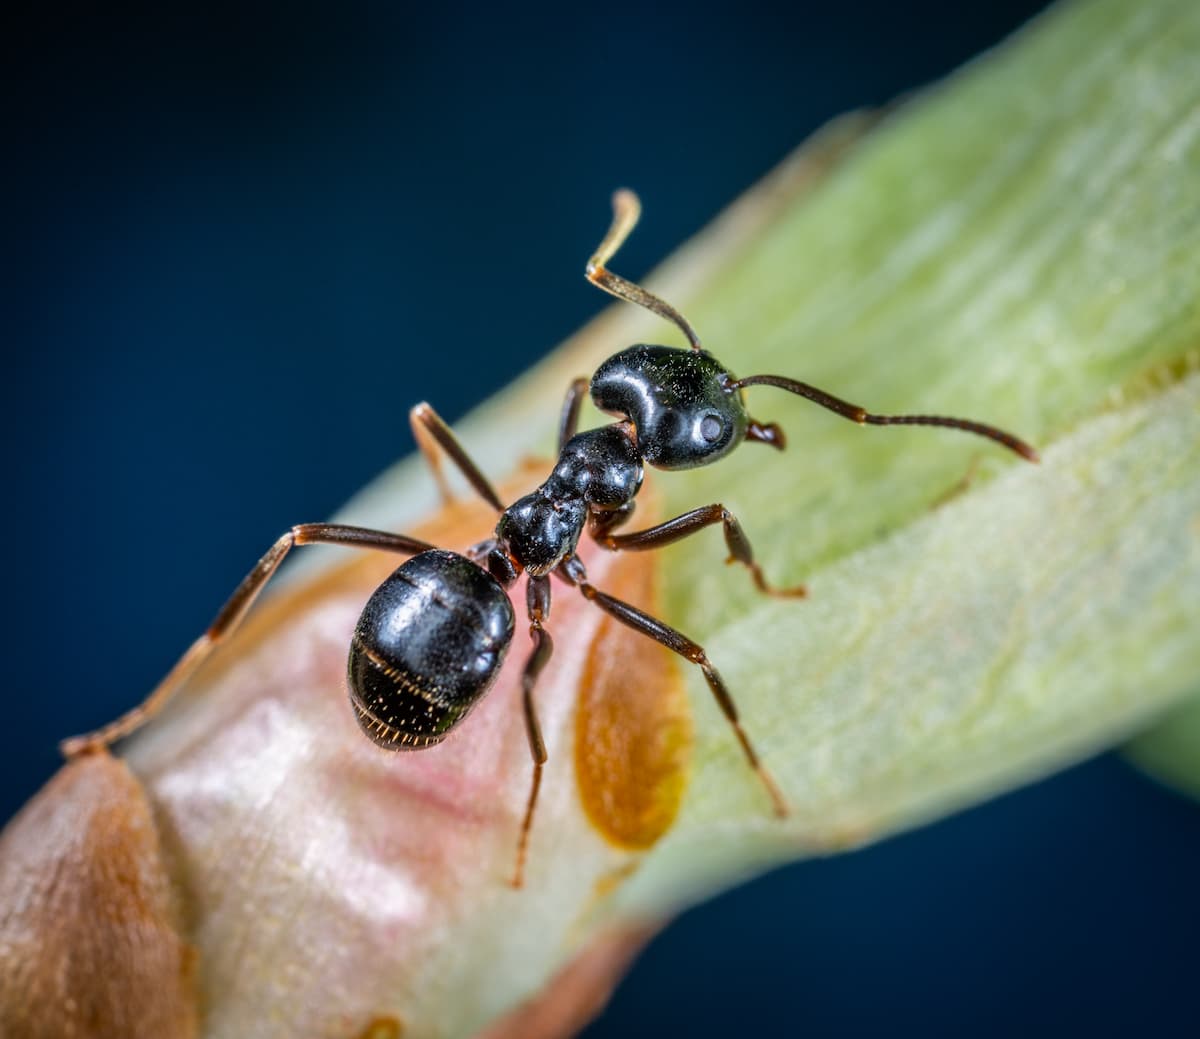 Fourmi noire posée sur une tige de plante, son abdomen bien visible